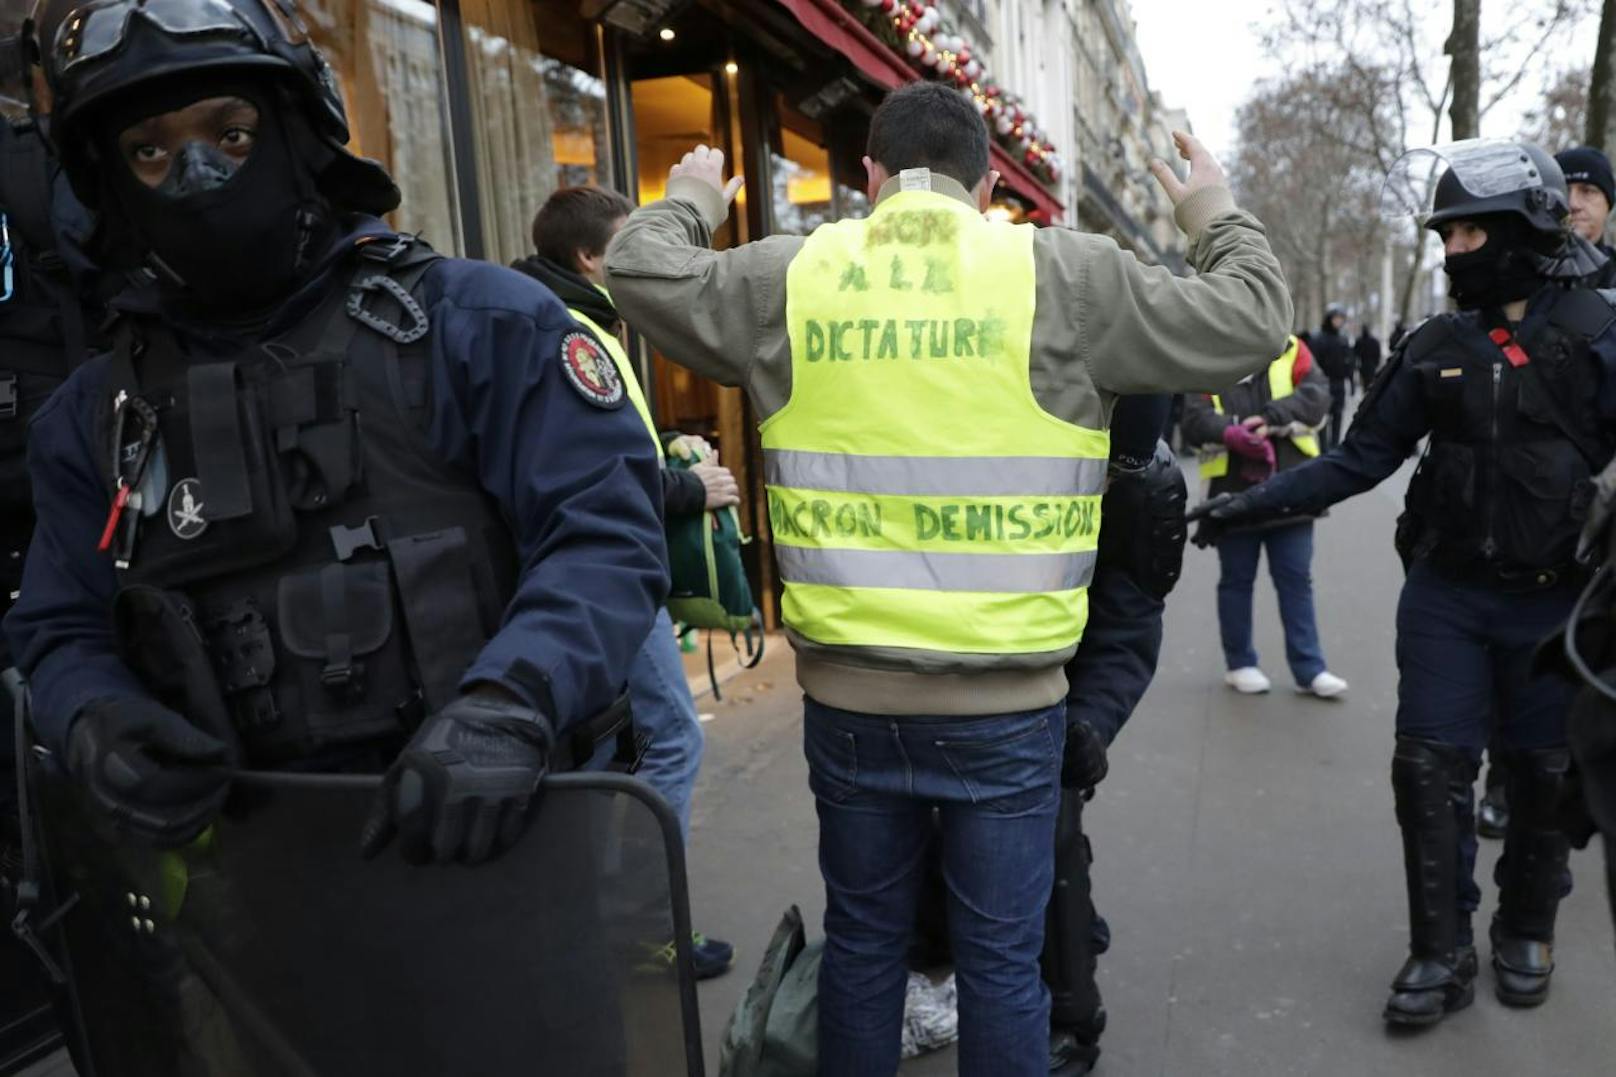 Am Wochenende wollen die "Gelbwesten" in Frankreich wieder aufmarschieren und demonstrieren. Die Behörden rechnen wieder mit Ausschreitungen und zeigen mit Zehntausenden Sicherheitskräften Präsenz.